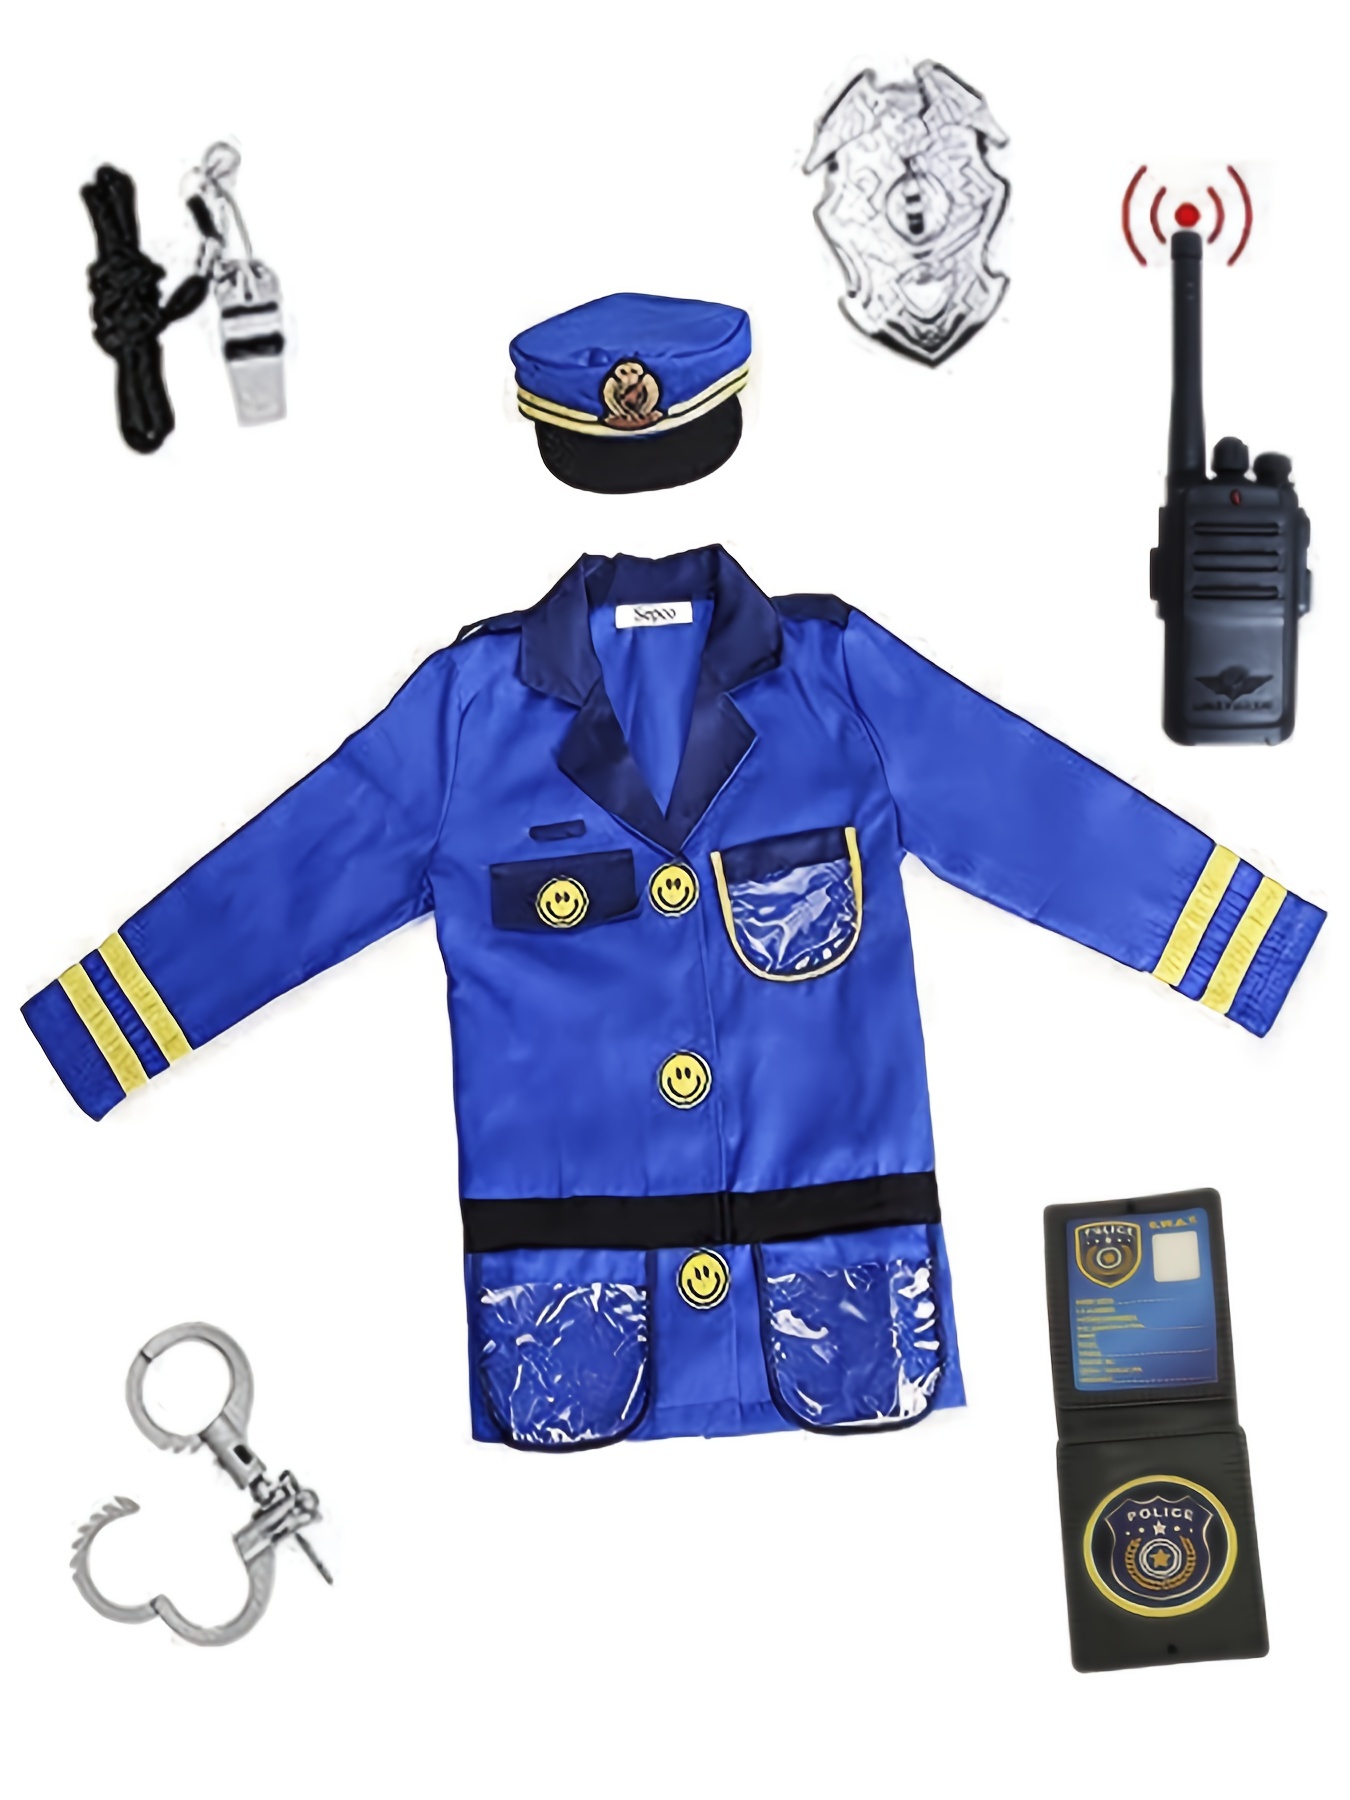 Disfraz de Policia niño – Elfamundi